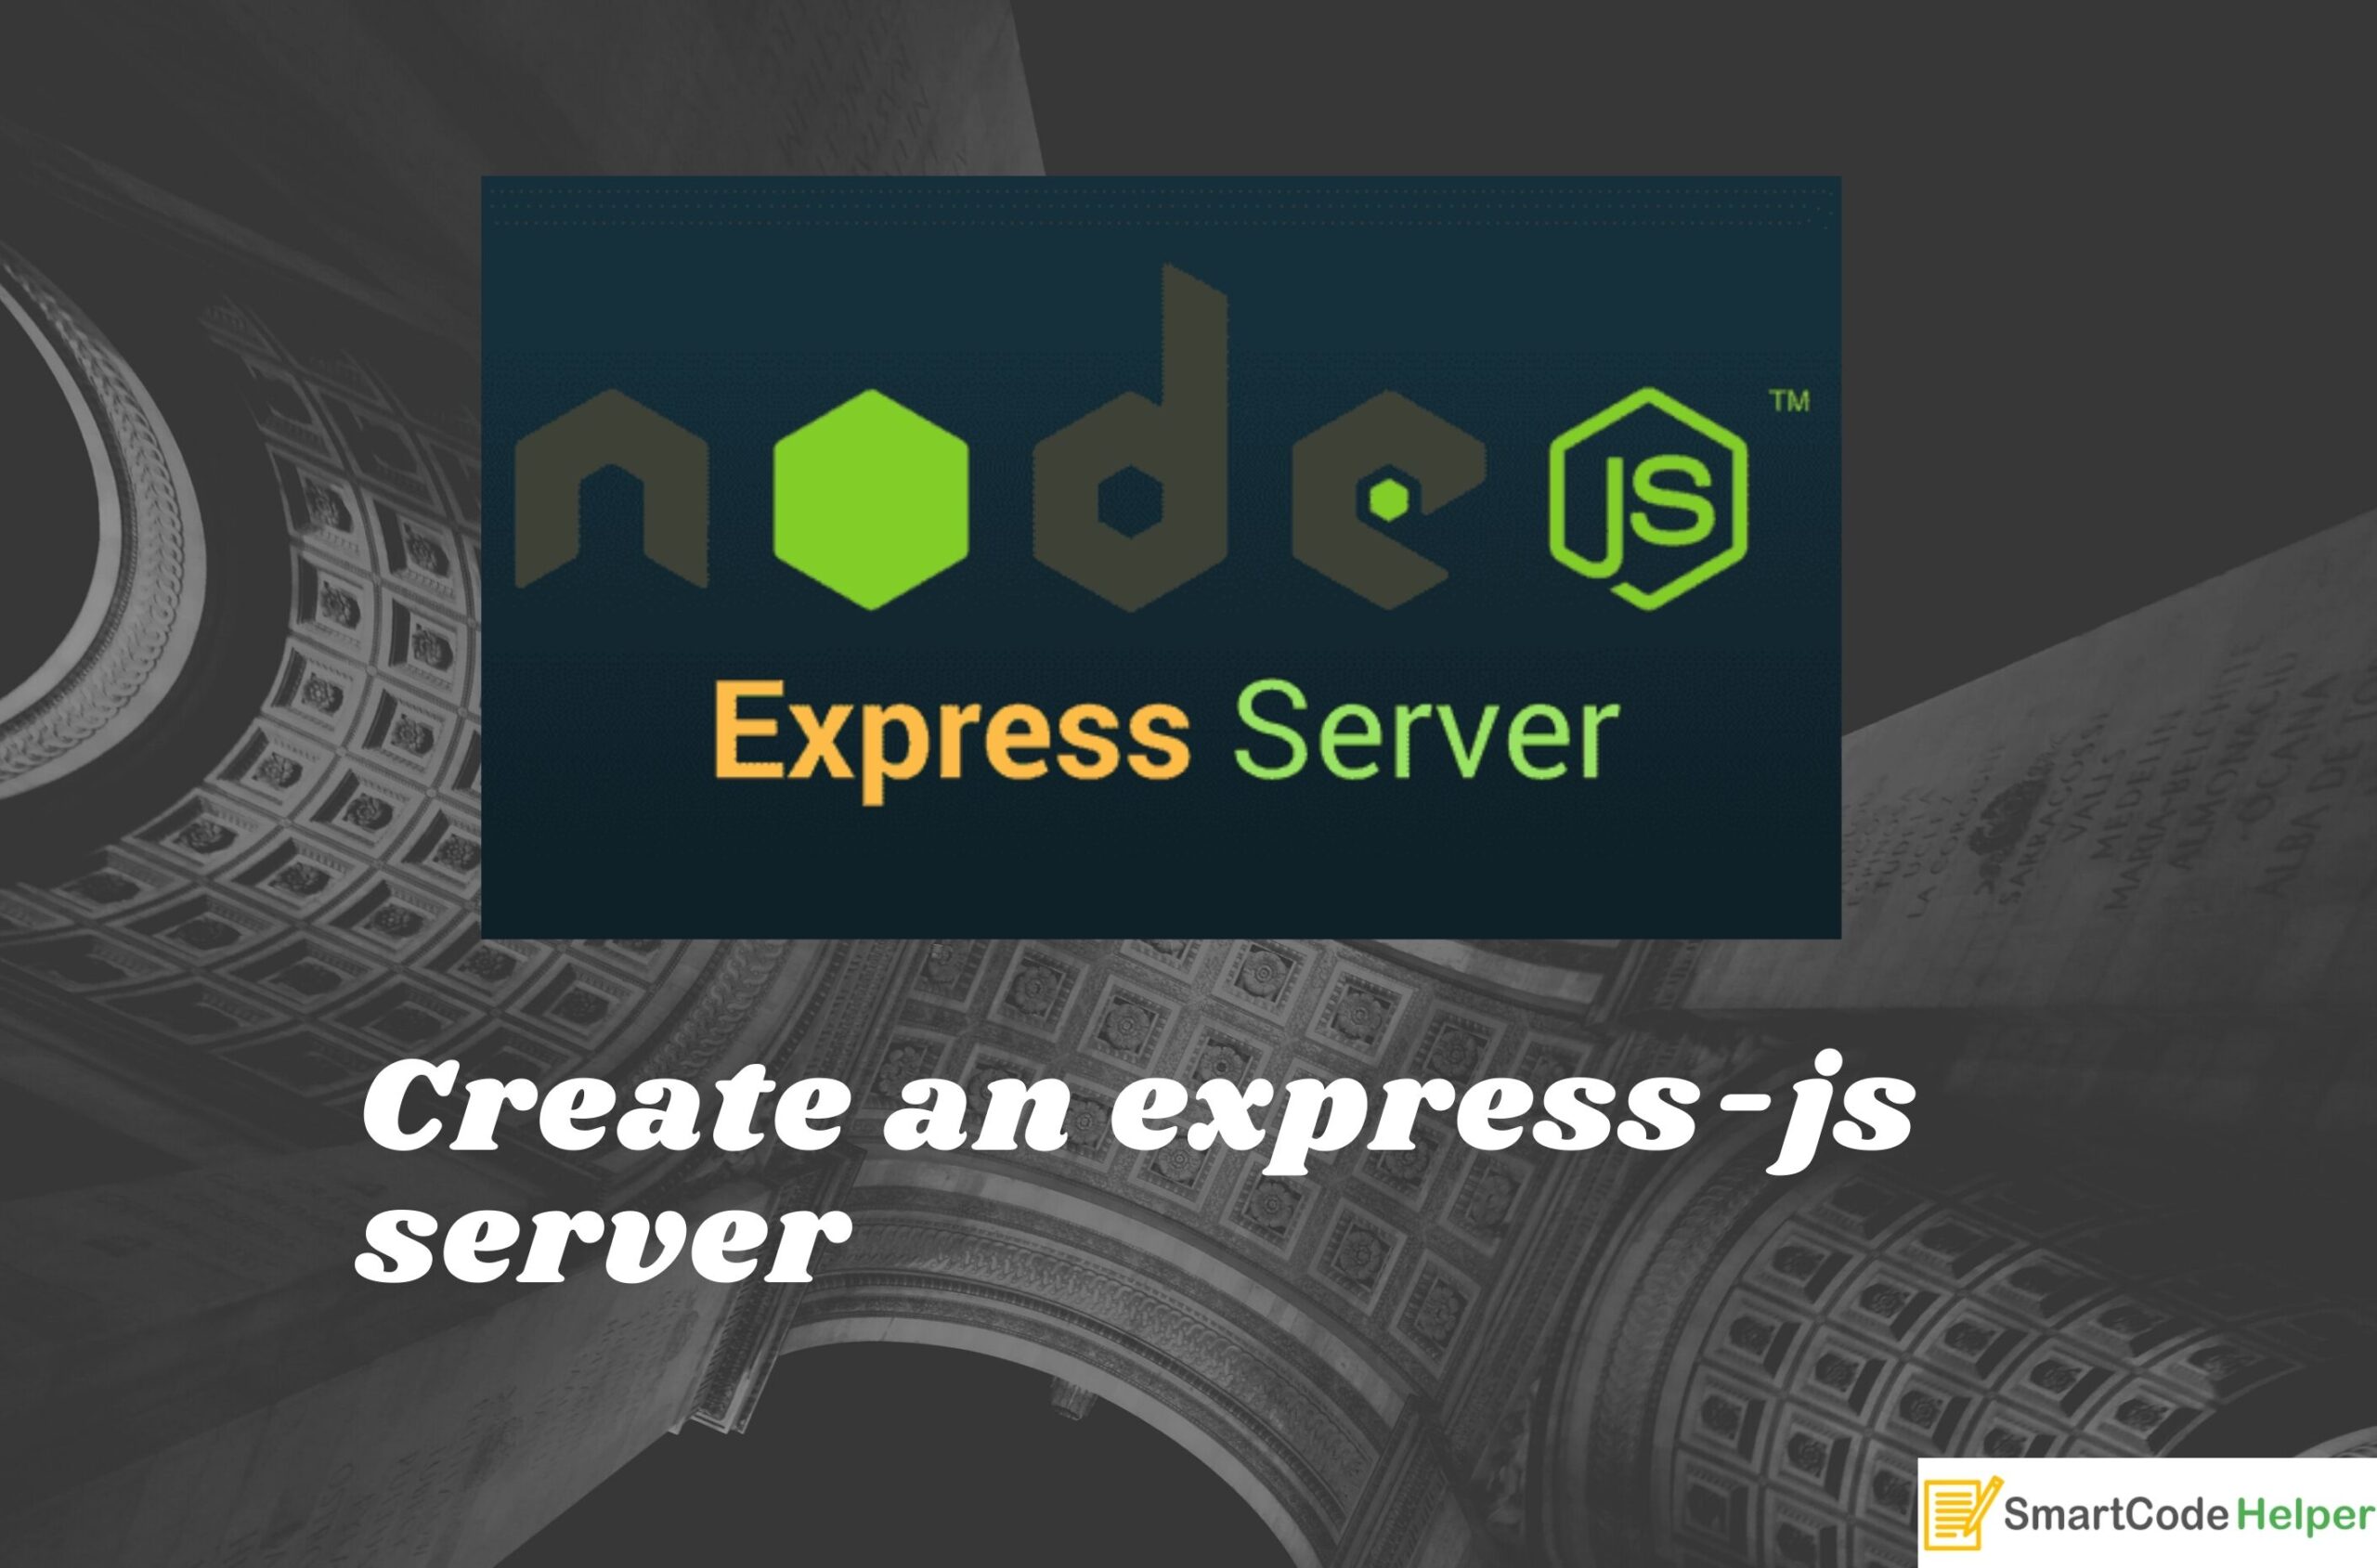 node js express